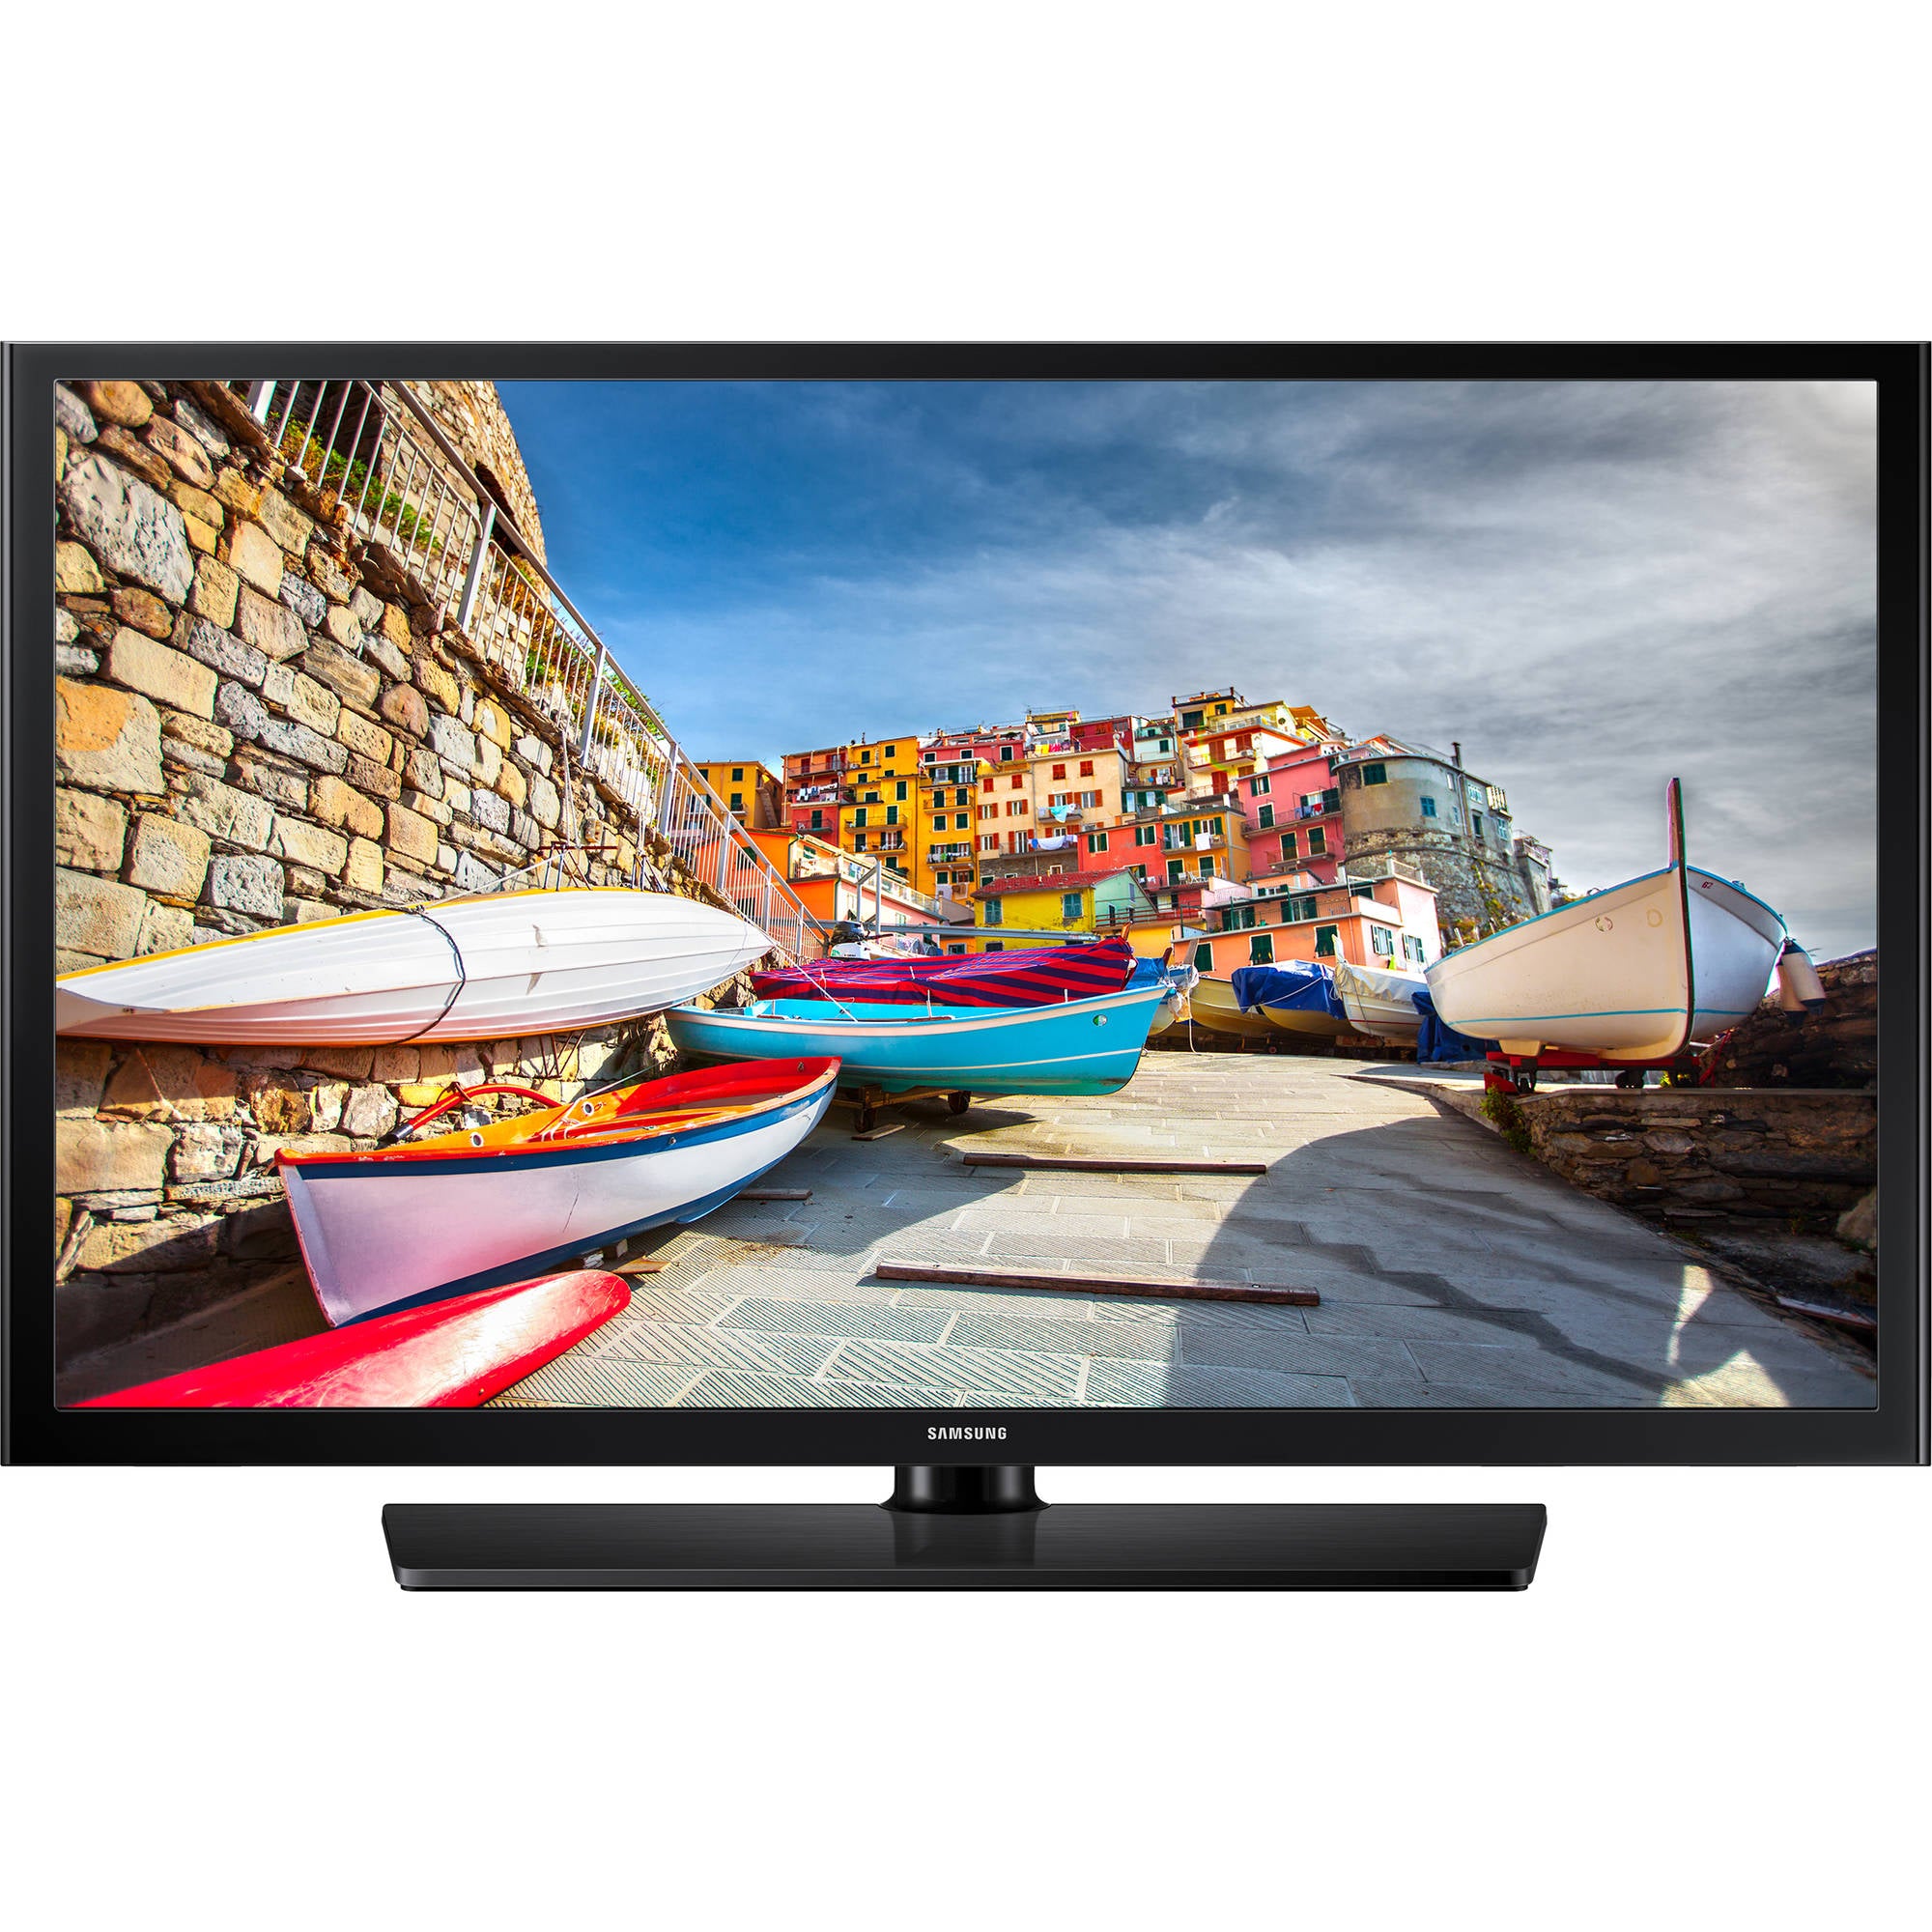 Samsung HG32NE460SFXZA 460 Series 32" Hospitality TV (Black) - Samsung Parts USA